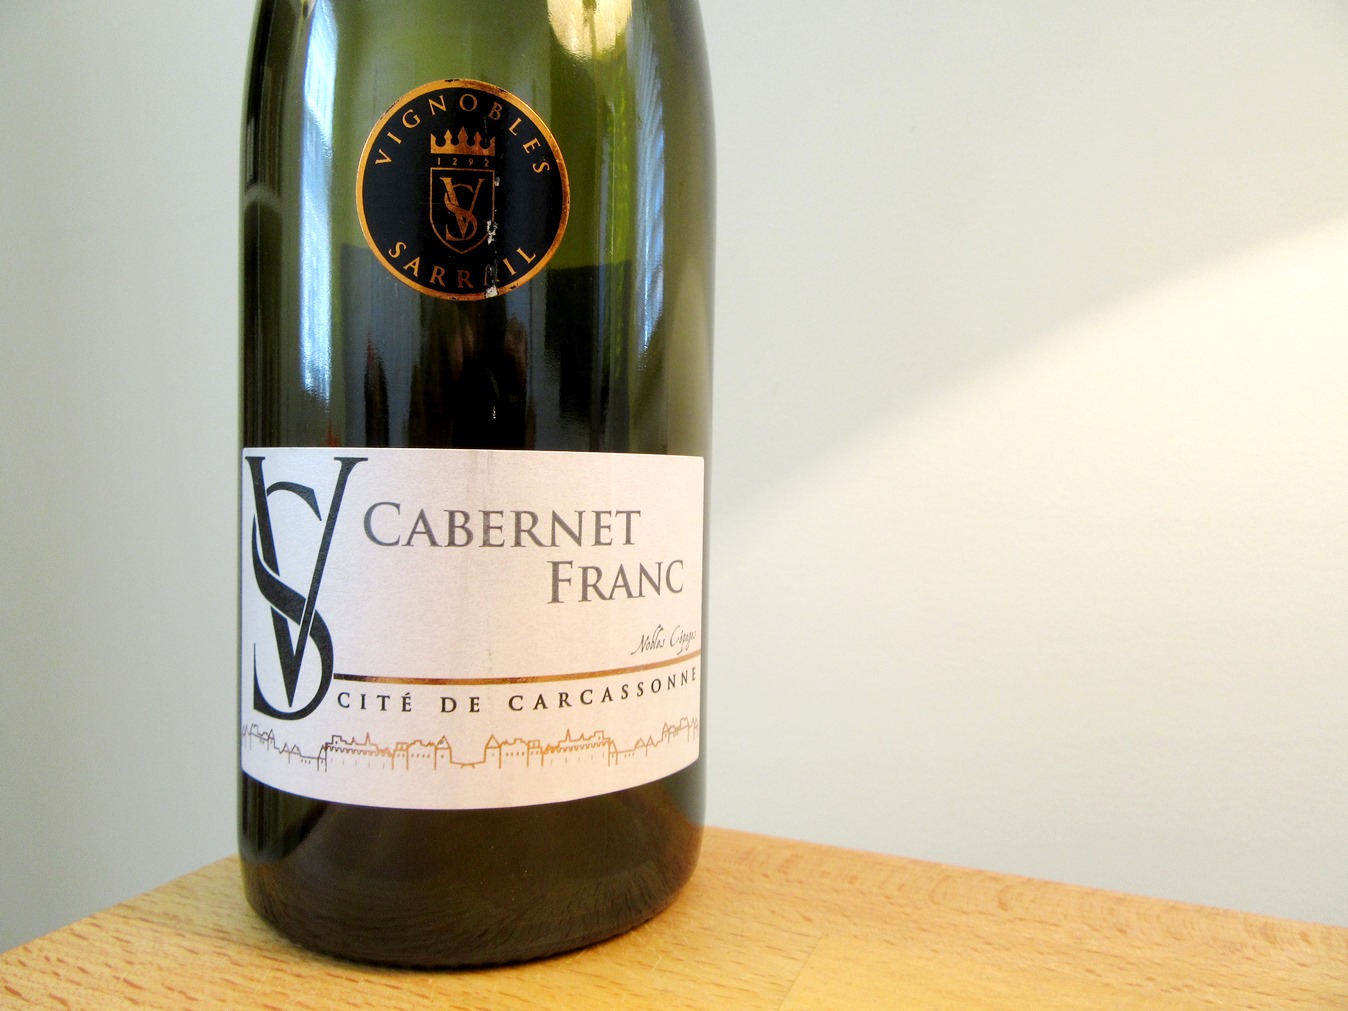 Vignobles Sarrail, VS Cabernet Franc 2014, IGP Cite de Carcassonne, France, Wine Casual